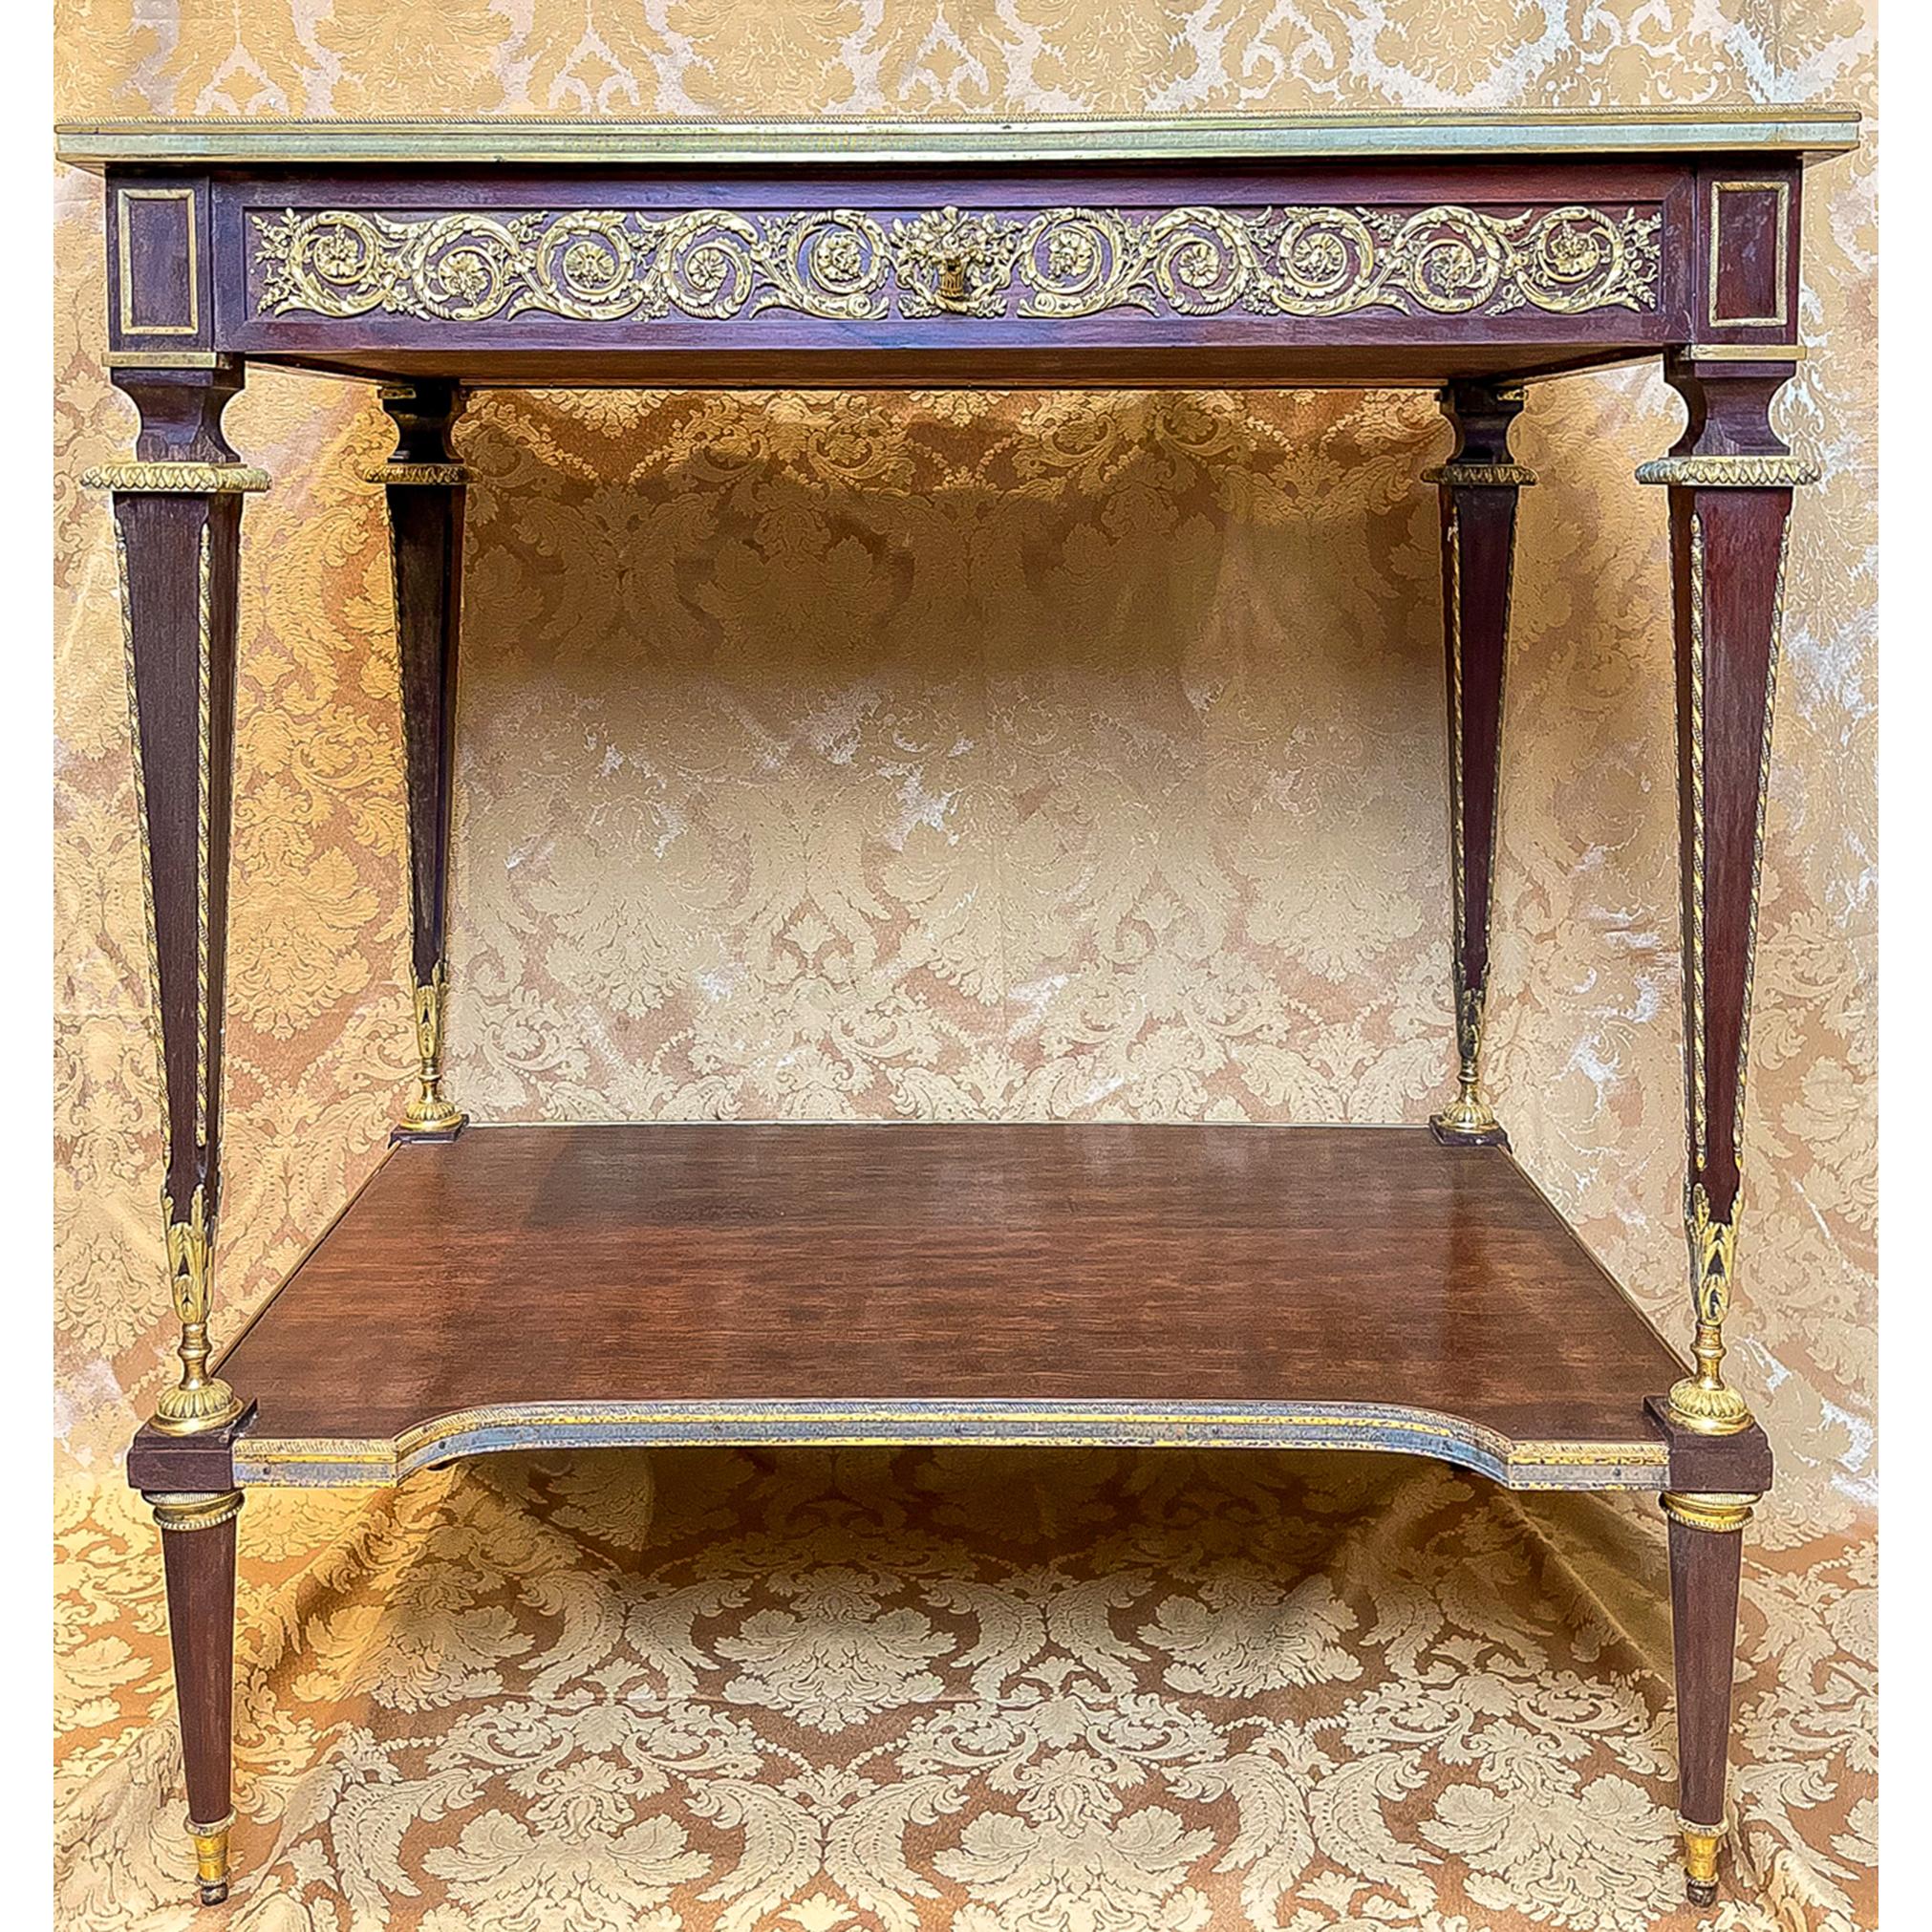 Fine Vitrine en bronze doré et acajou de style Louis XVI attribuée à François Linke. Doublée de velours rouge antique, la table repose sur des pieds fuselés, surmontés d'une étagère inférieure. Des guirlandes de fleurs et de feuillages moulés en